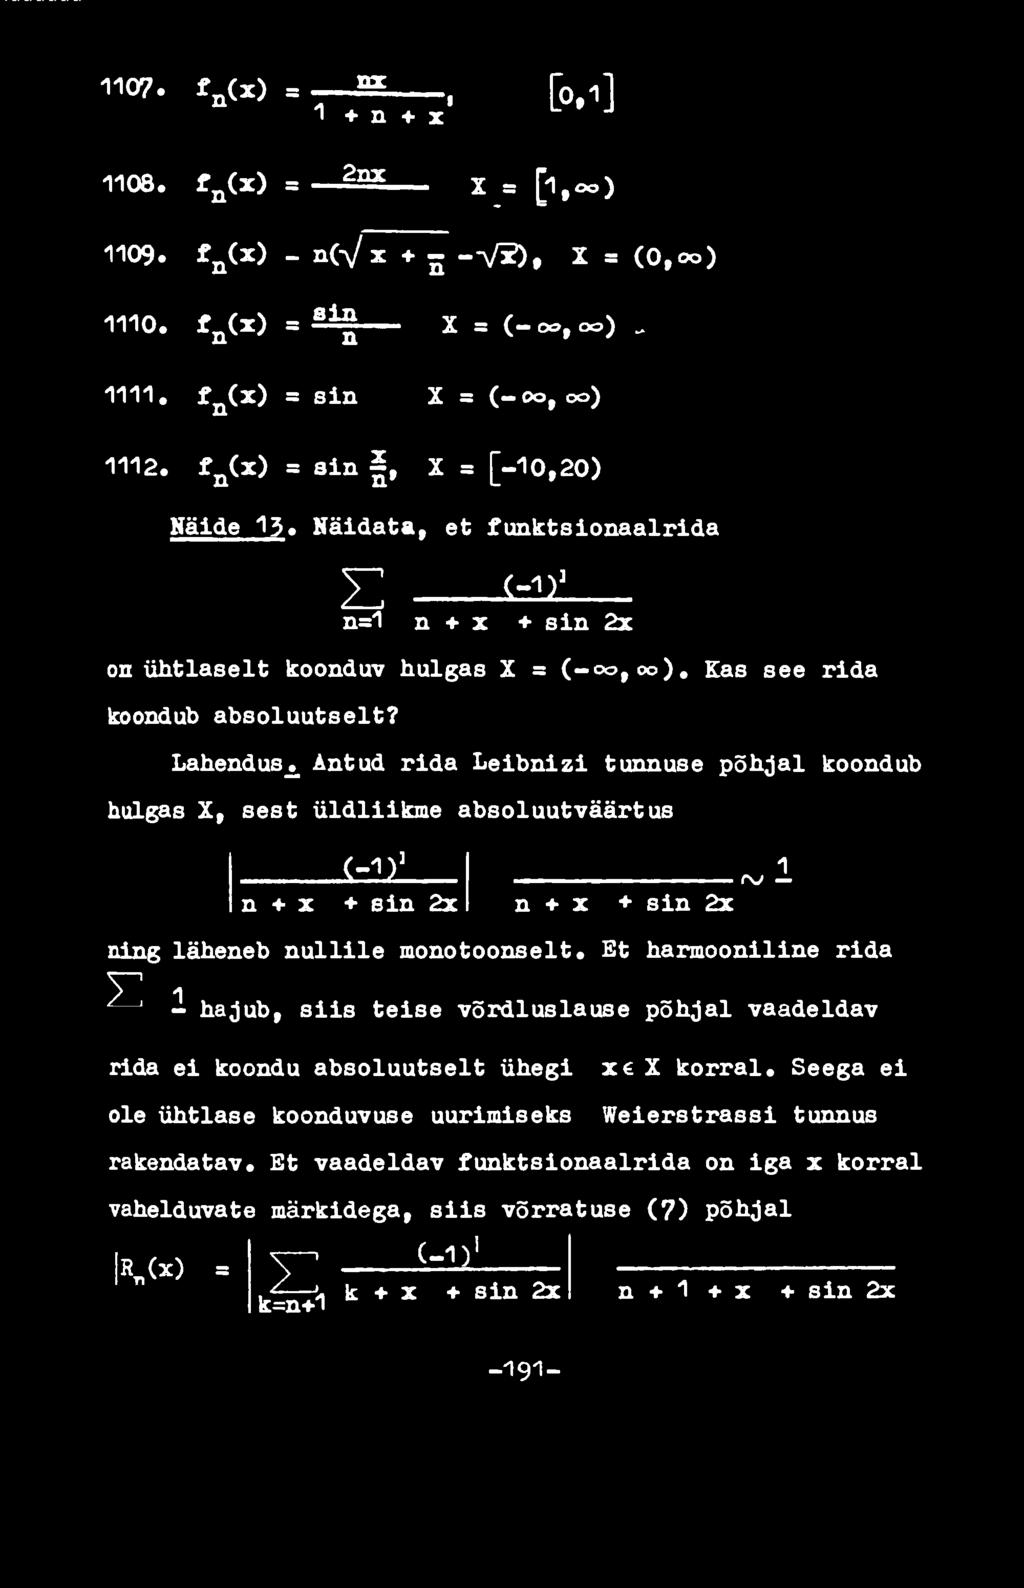 Lahendus л Antud rida Leibnizi tunnuse põhjal koondub hulgas X, sest üldliikme absoluutväärtus i=12i n x + ein 2x 1 rv n + x + sin 2x ning läheneb nullile monotoonselt.